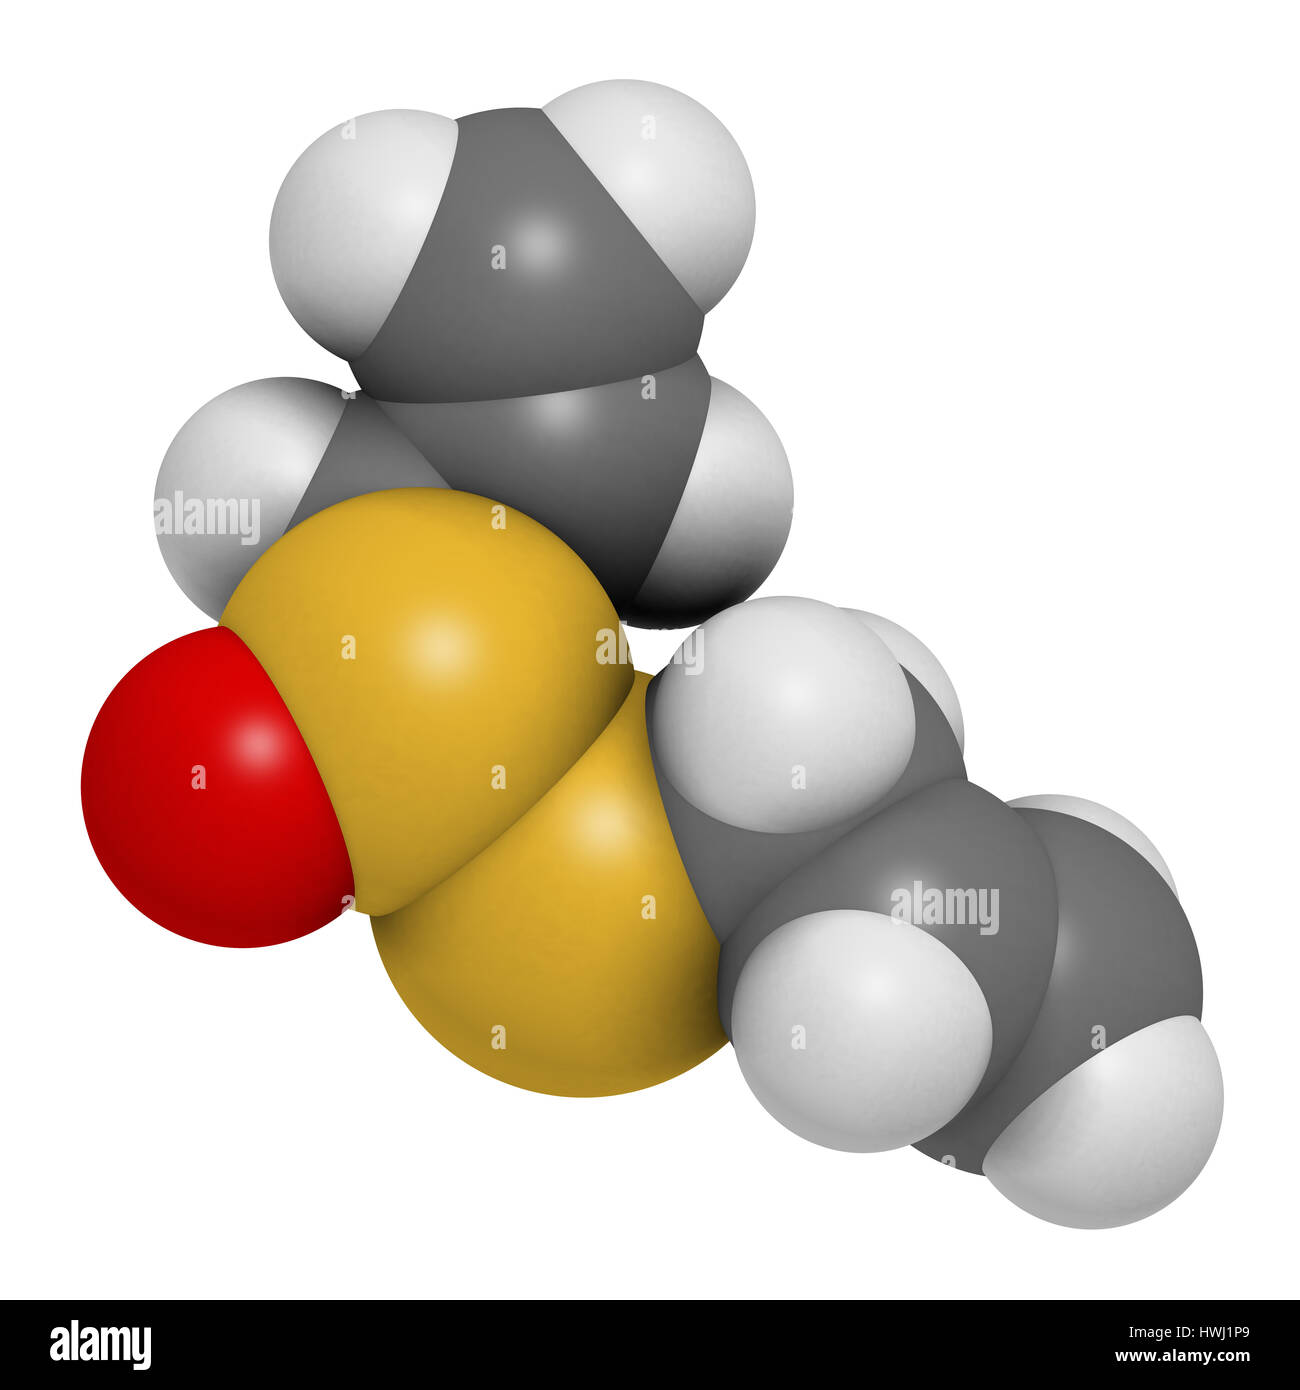 Aglio Allicin molecola. Il rendering 3D. Formata da alliin dall'enzima alliinase. Ritiene di avere un certo numero di effetti positivi sulla salute. Gli atomi sono ri Foto Stock